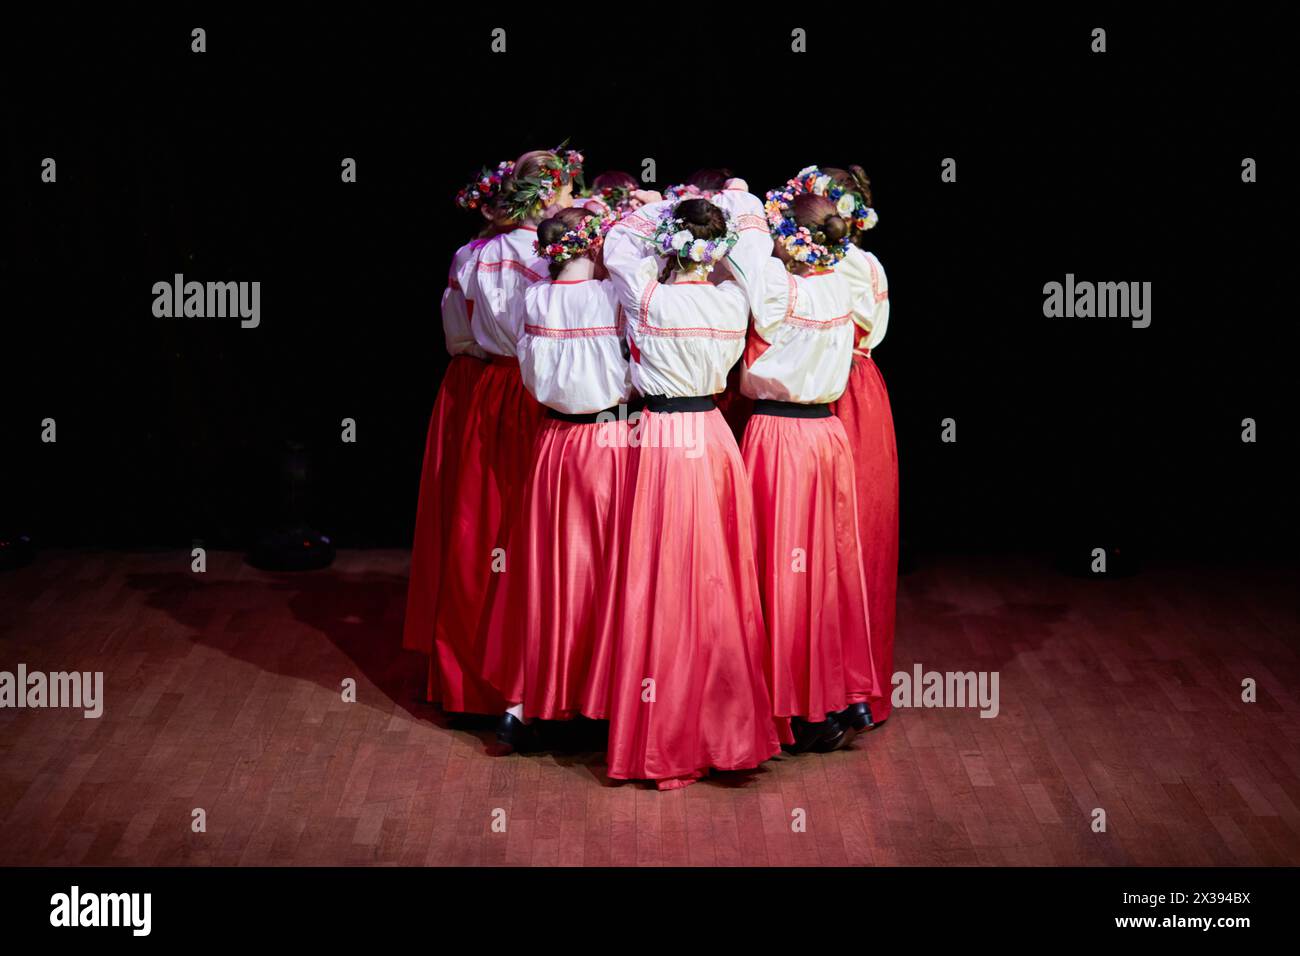 MOSCOU, RUSSIE - 21 MAI 2016 : des filles en jupes rouges, des chemisiers blancs brodés et avec des couronnes sur la tête dansent la danse folklorique russe pendant le concert Banque D'Images